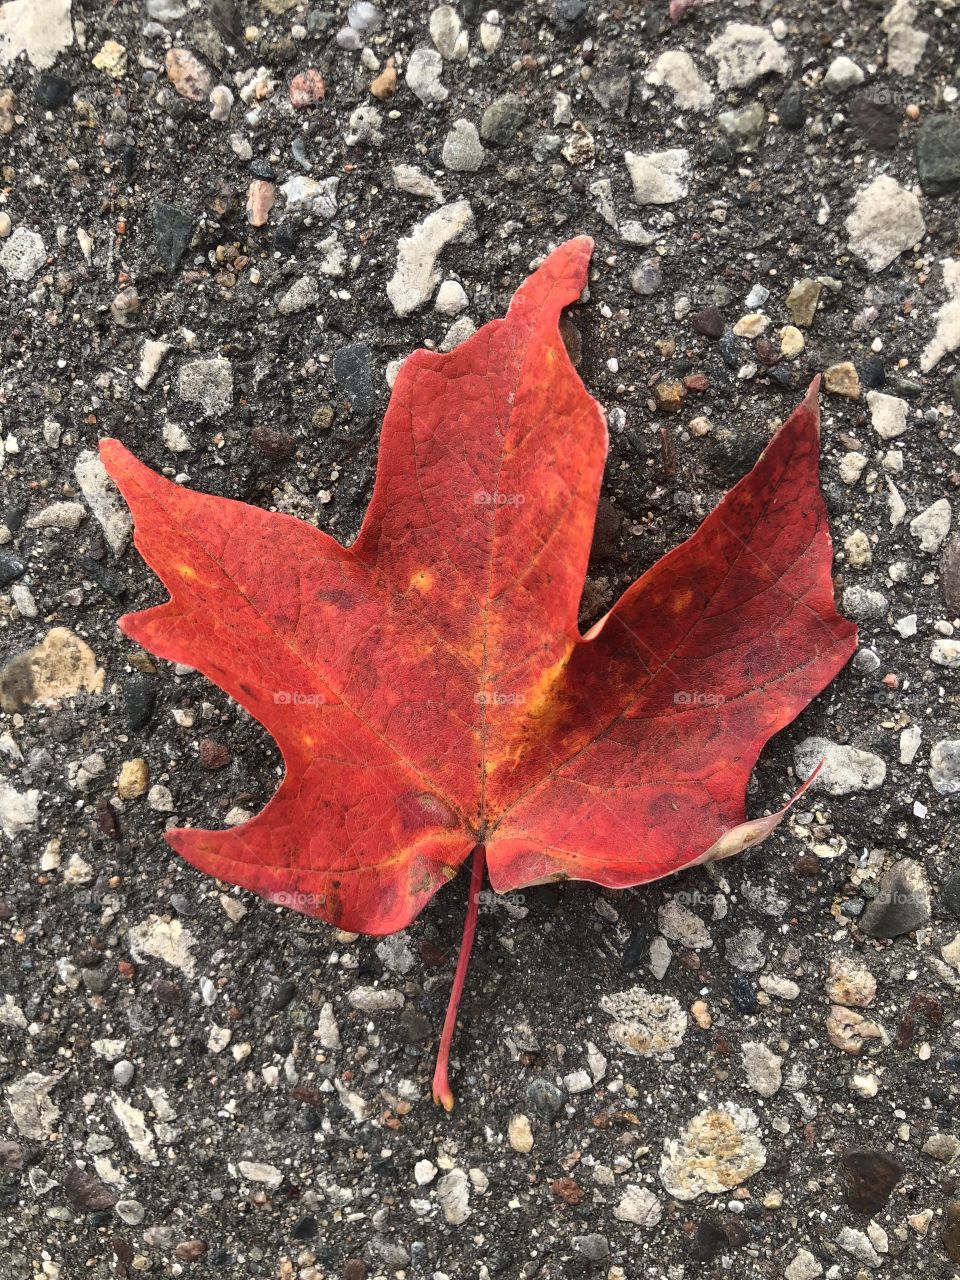 Maple leaf 